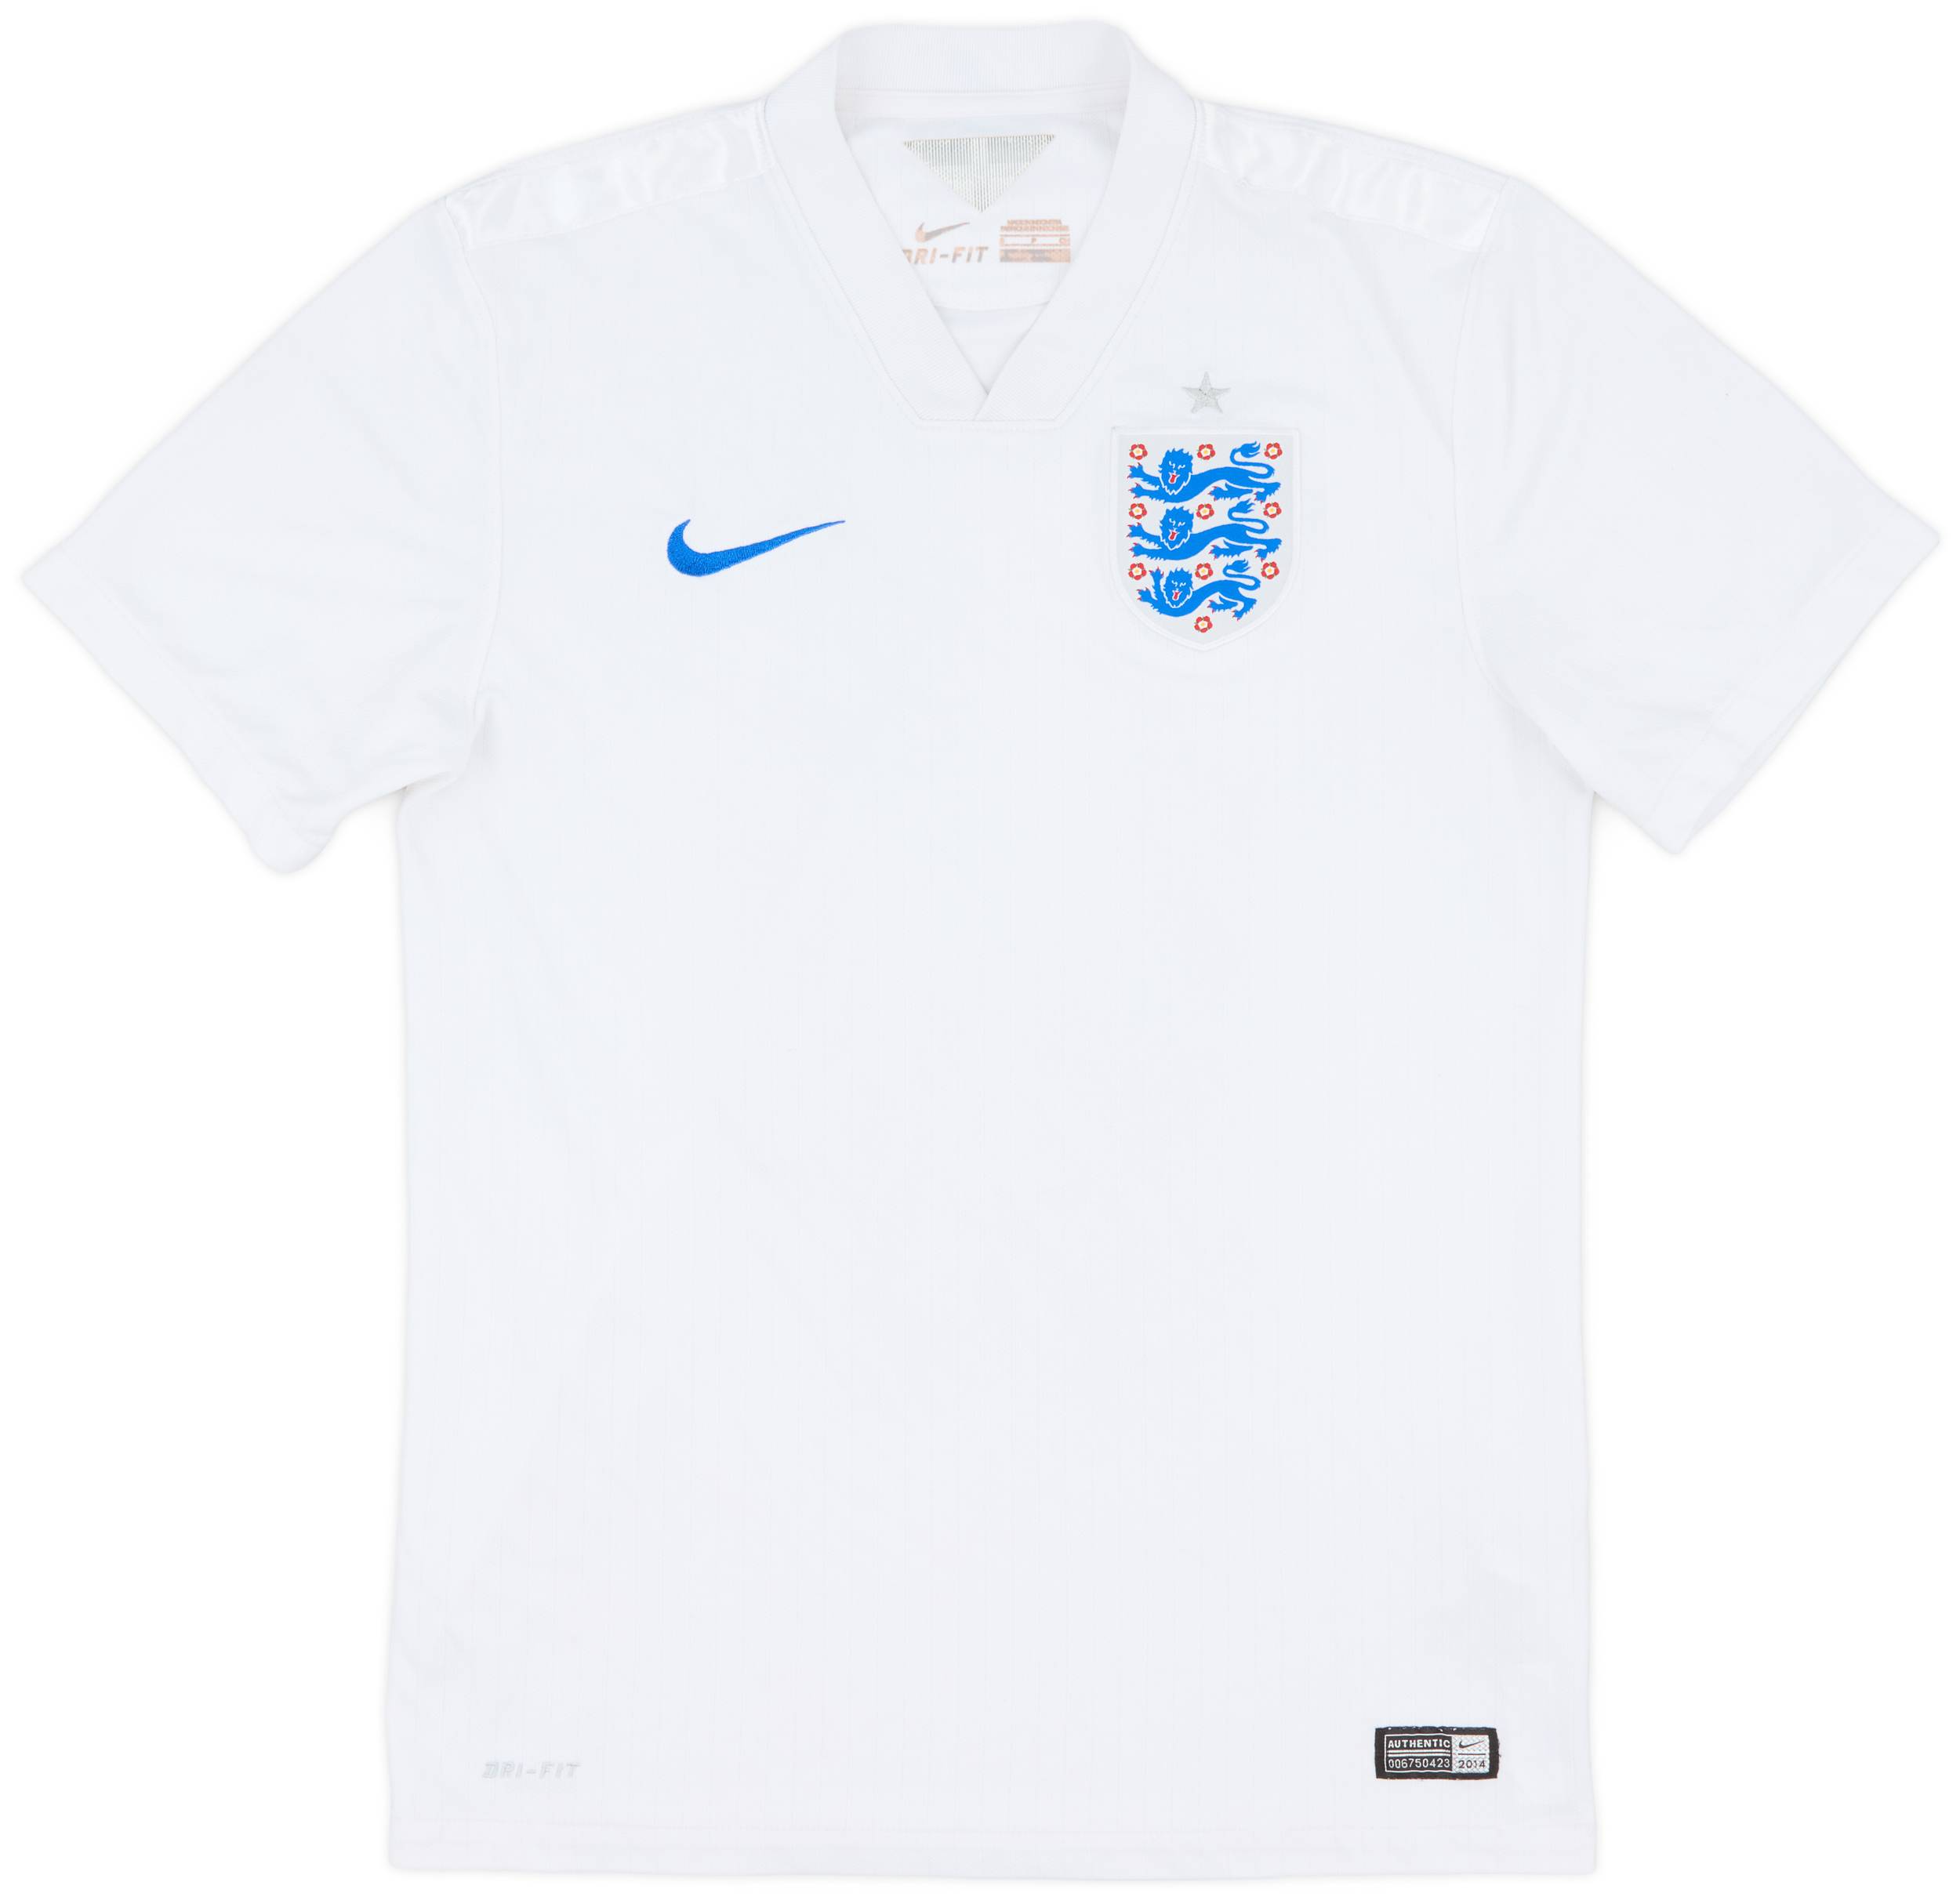 2014-15 England Home Shirt - 6/10 - (S)